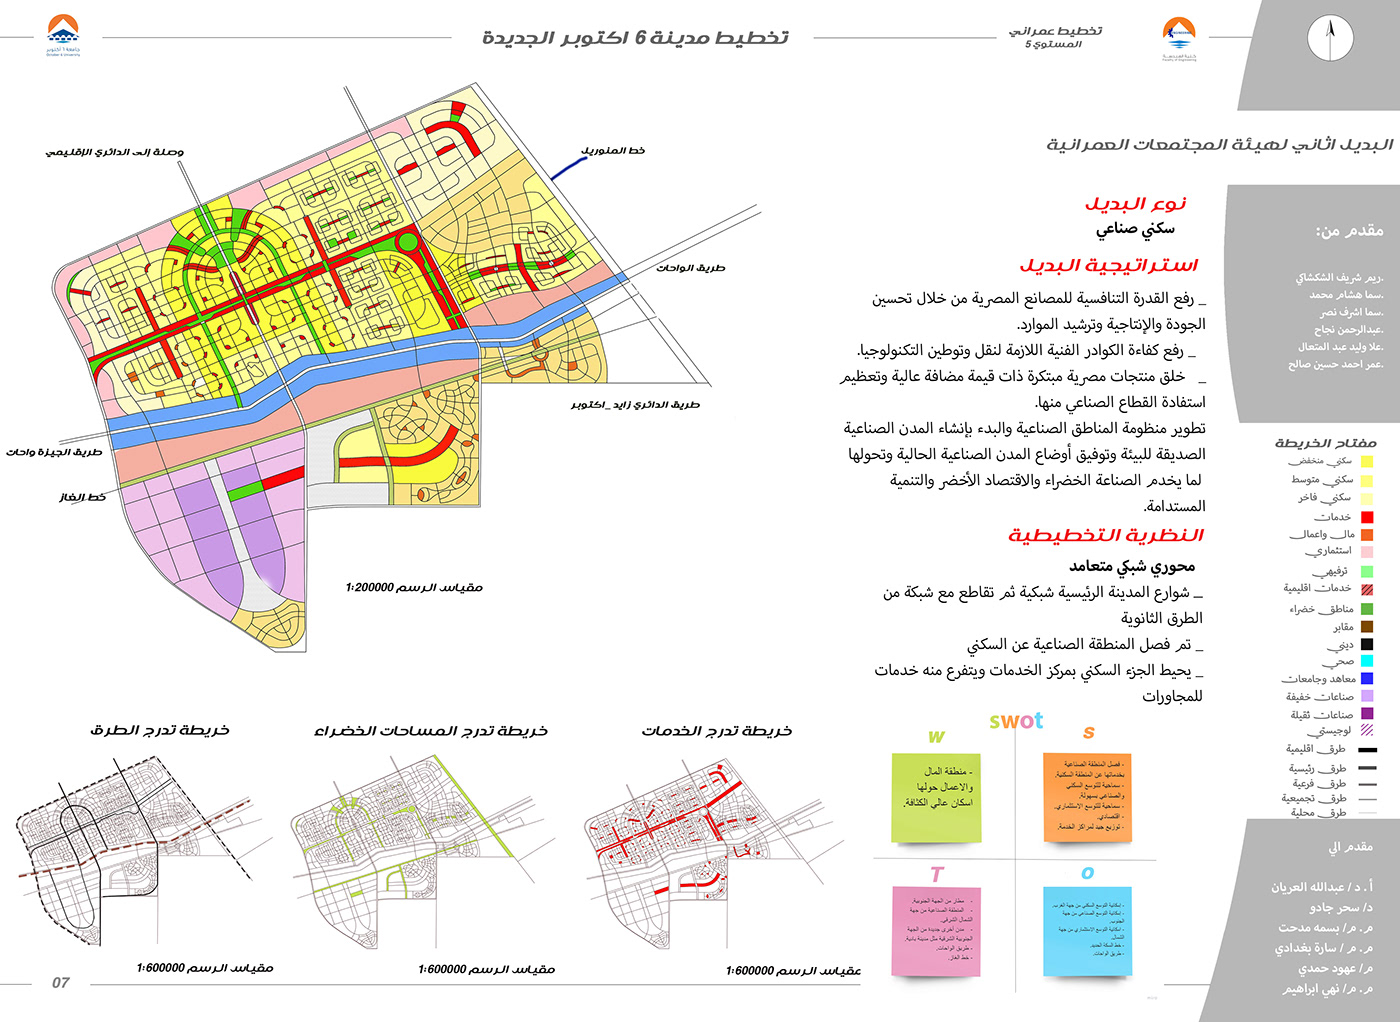 Analysis architecture Case Study planning strategic planning Urban urban planning